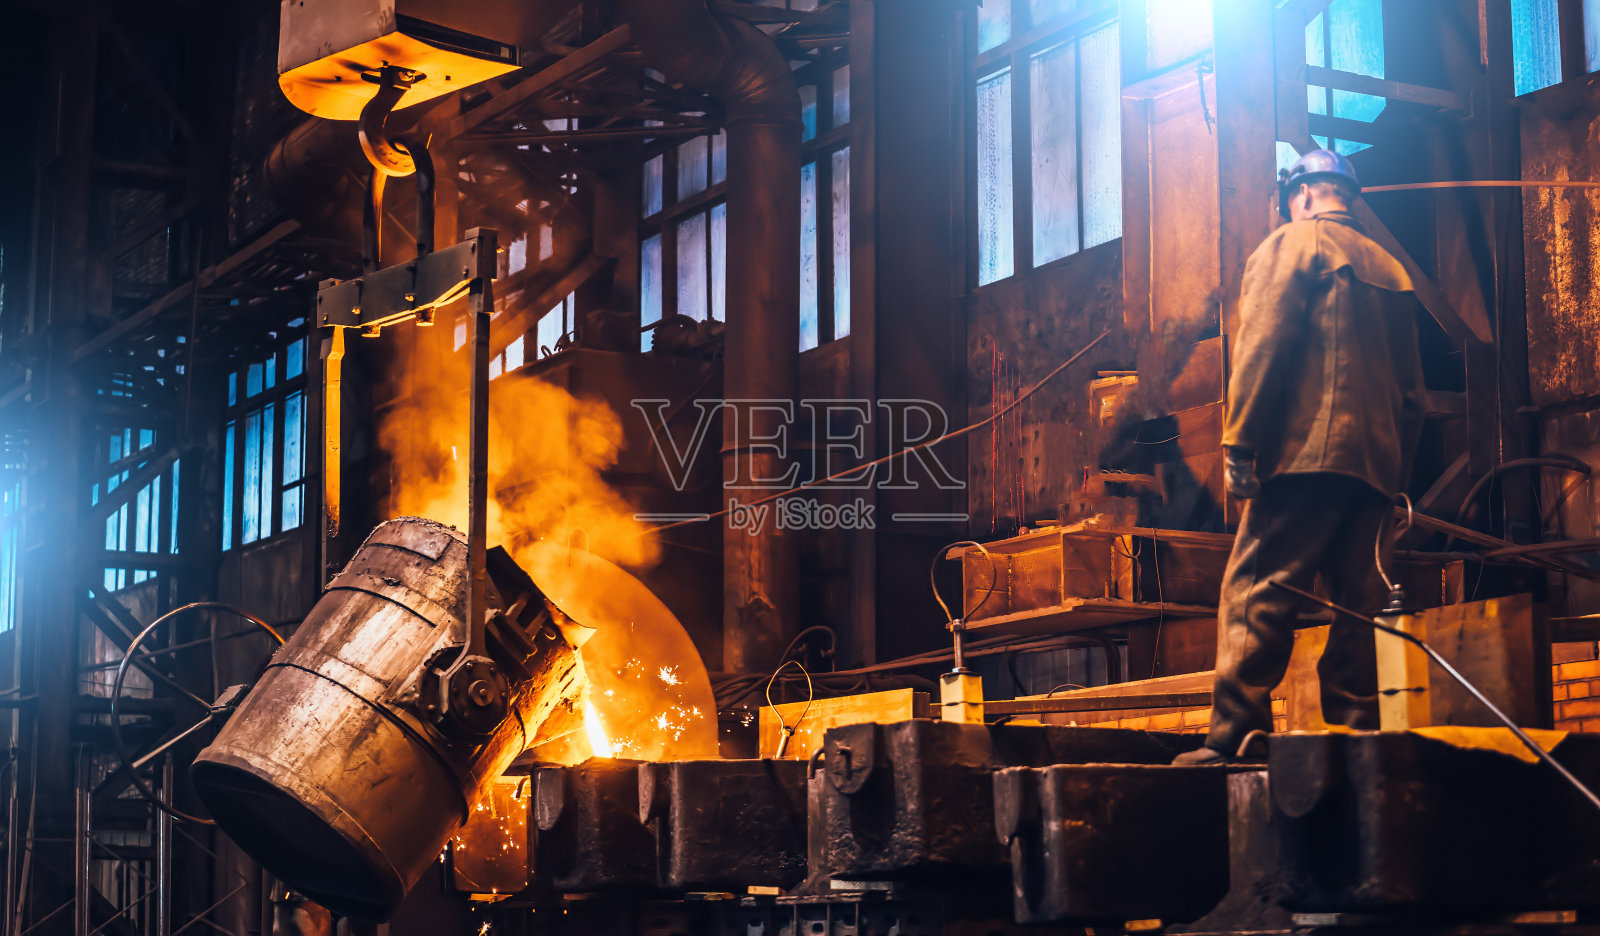 液态金属倒入模具中。在重工业铸造冶金厂的熔炉中熔化金属照片摄影图片